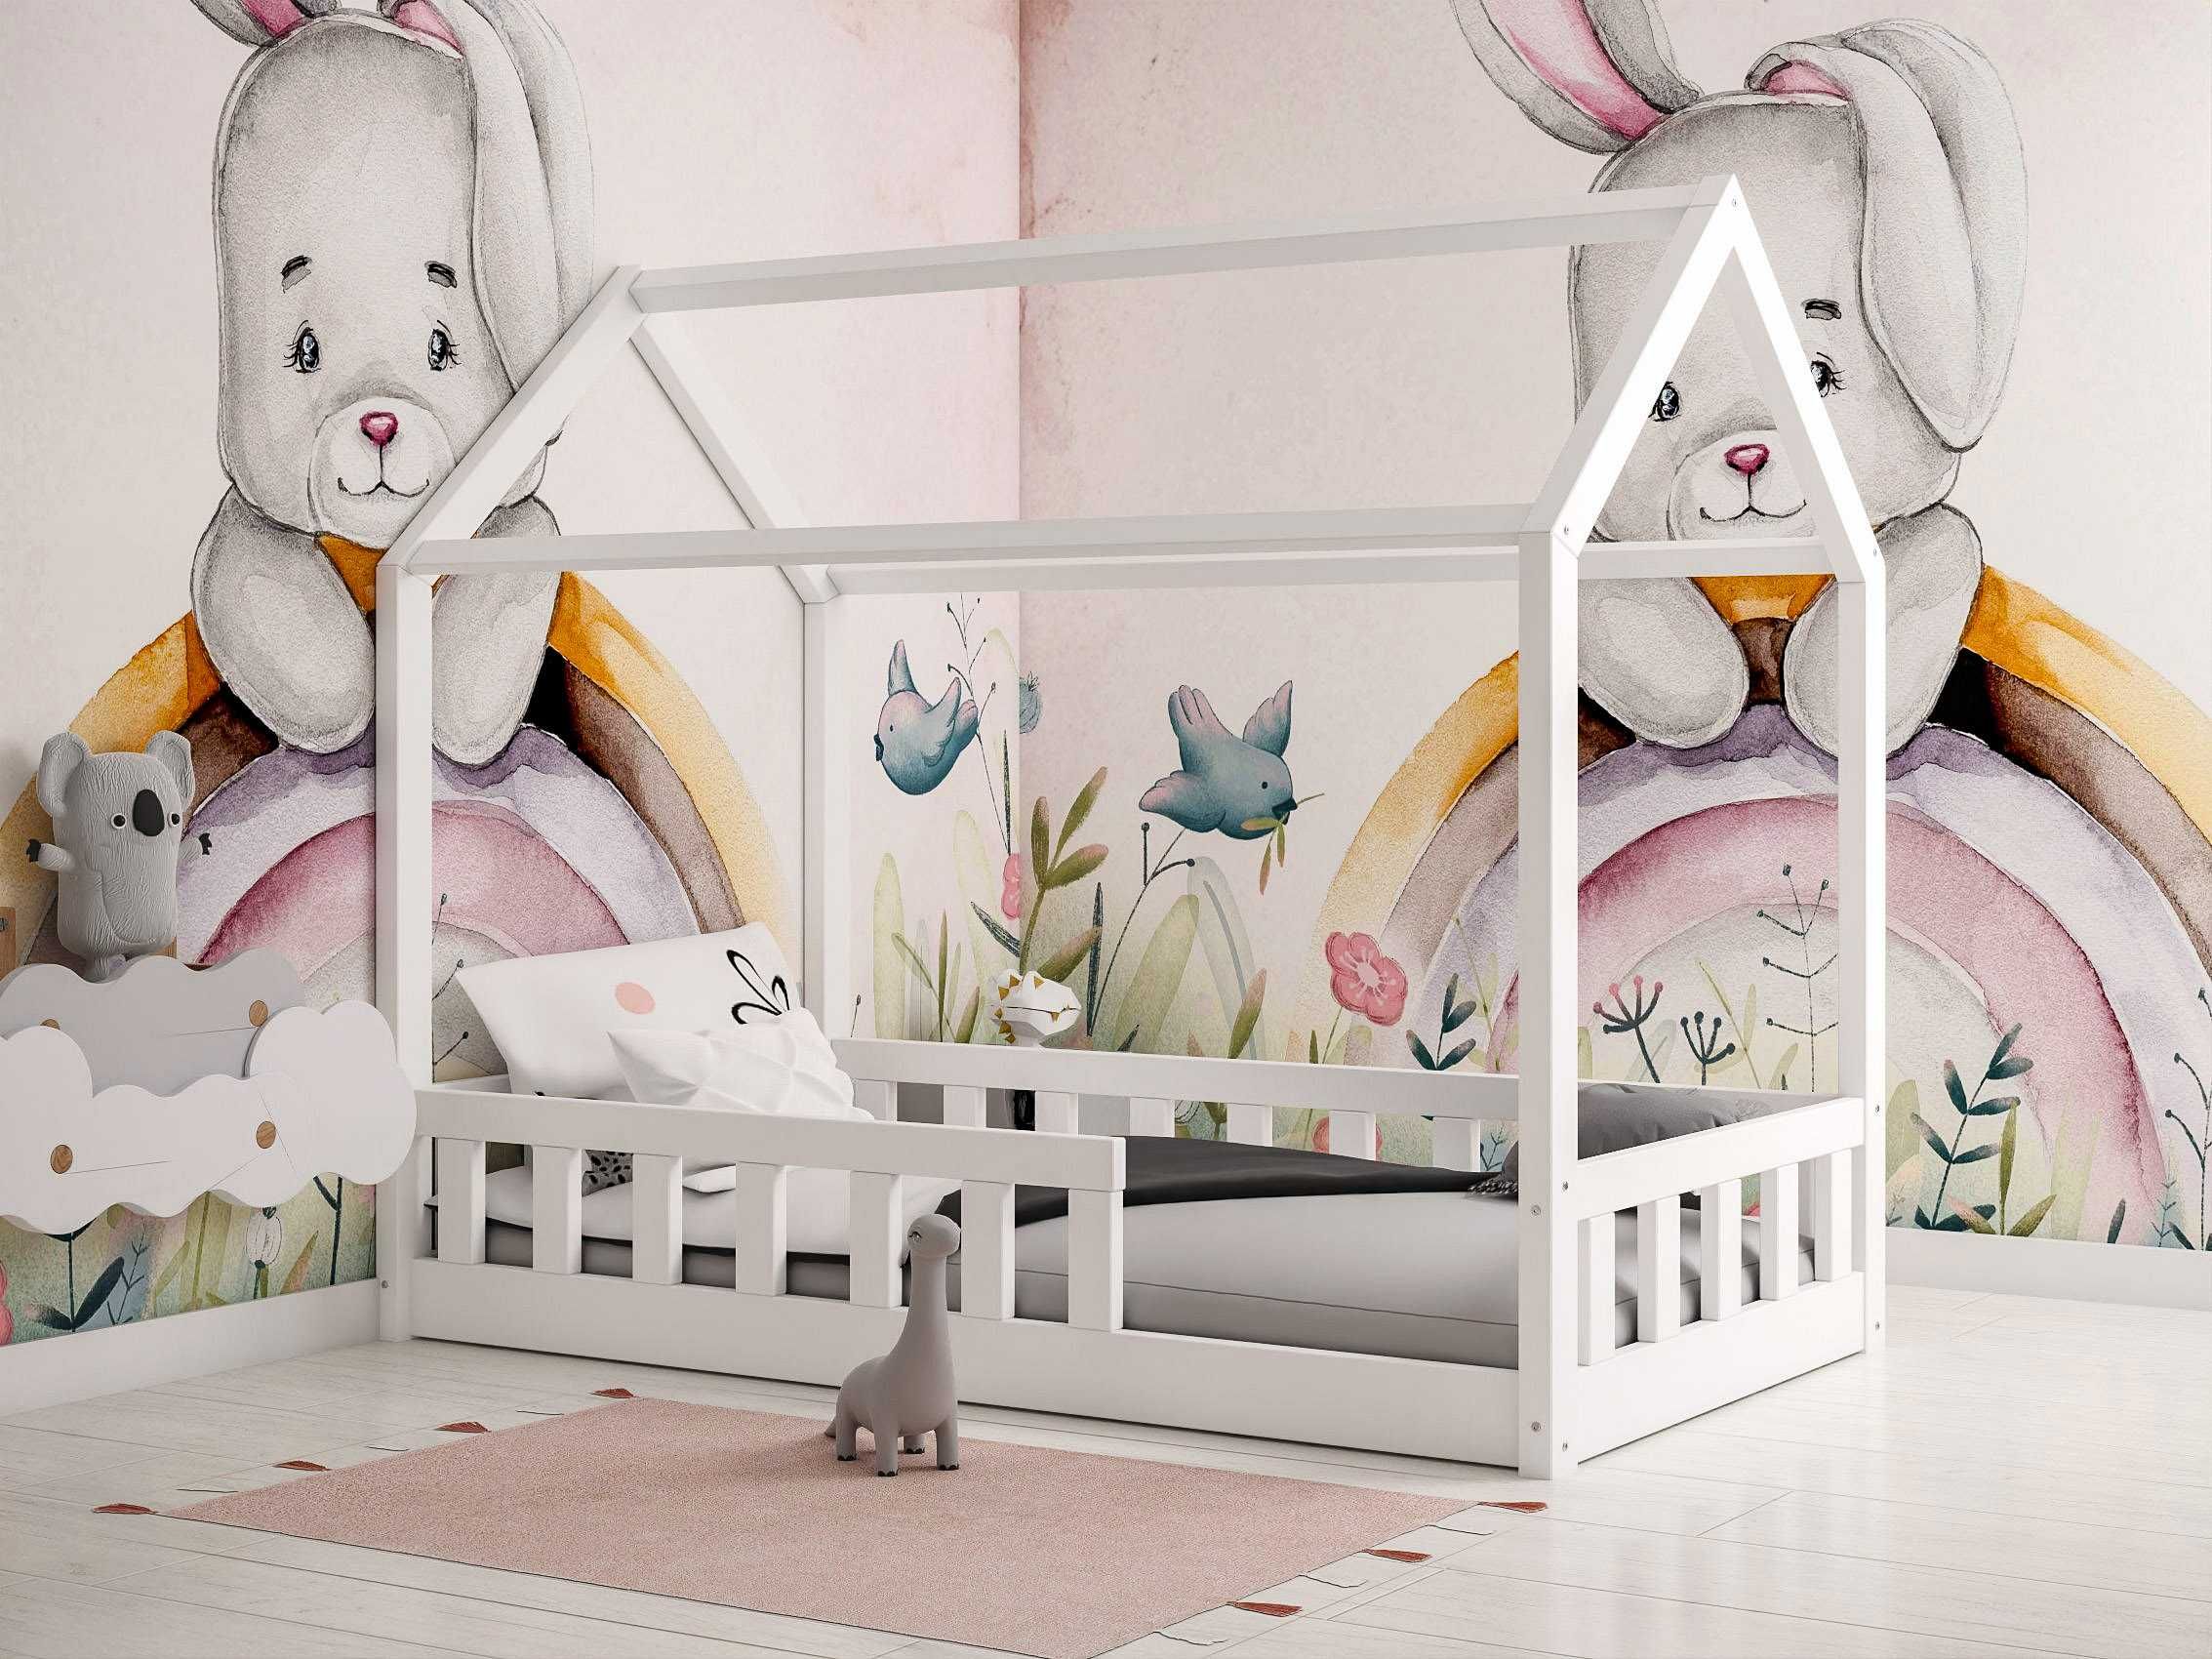 Łóżko dziecięce domek drewniane z barierkami LUNA białe dla dzieci